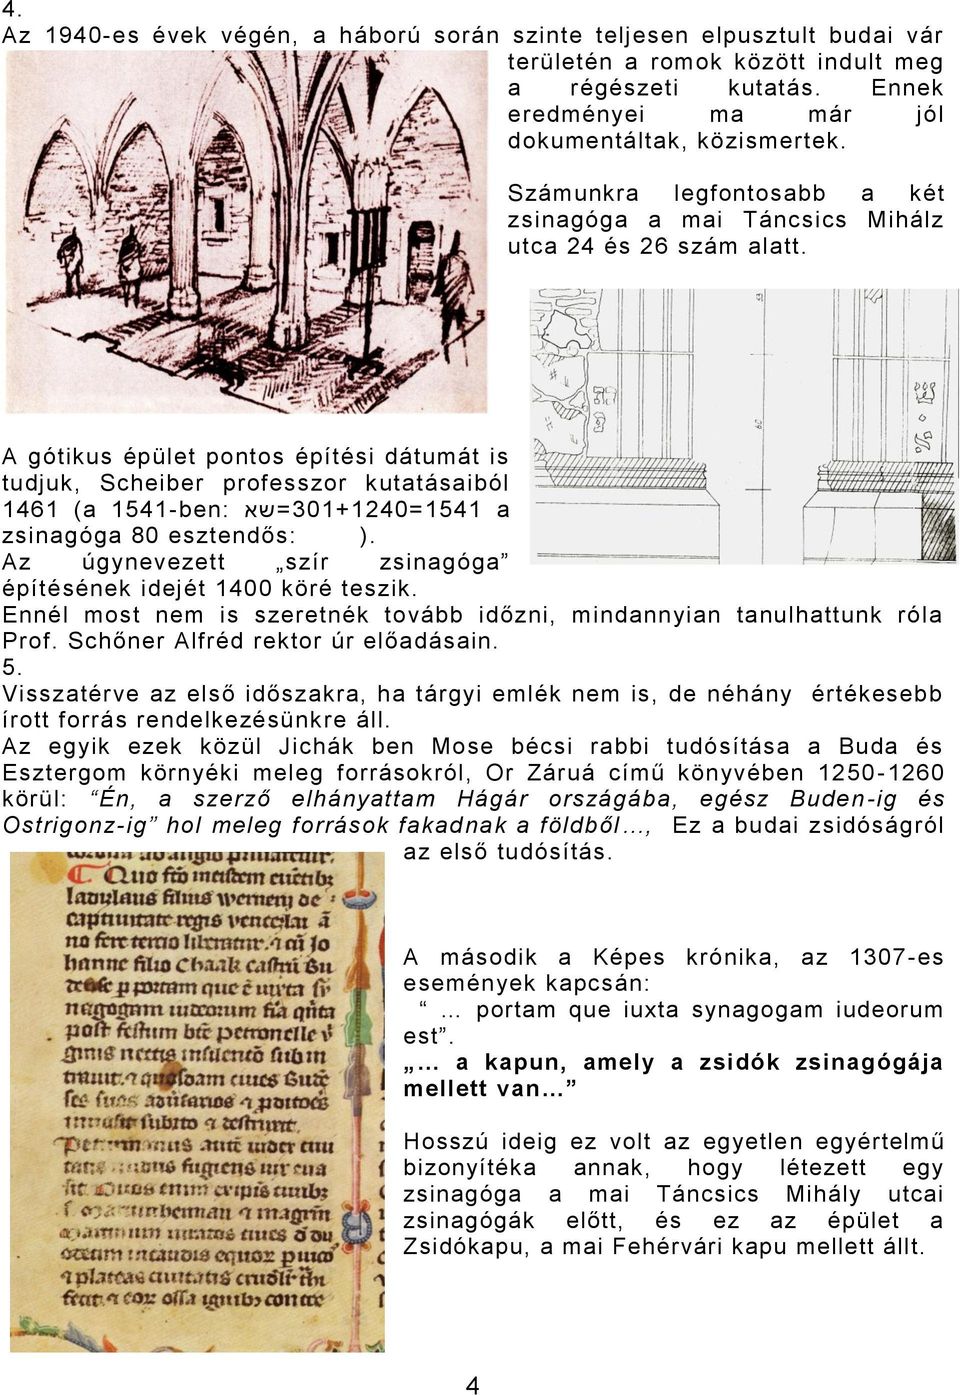 A gótikus épület pontos építési dátumát is tudjuk, Scheiber professzor kutatásaiból 1461 (a 1541-ben: 301+1240=1541 =שא a zsinagóga 80 esztendős: ).